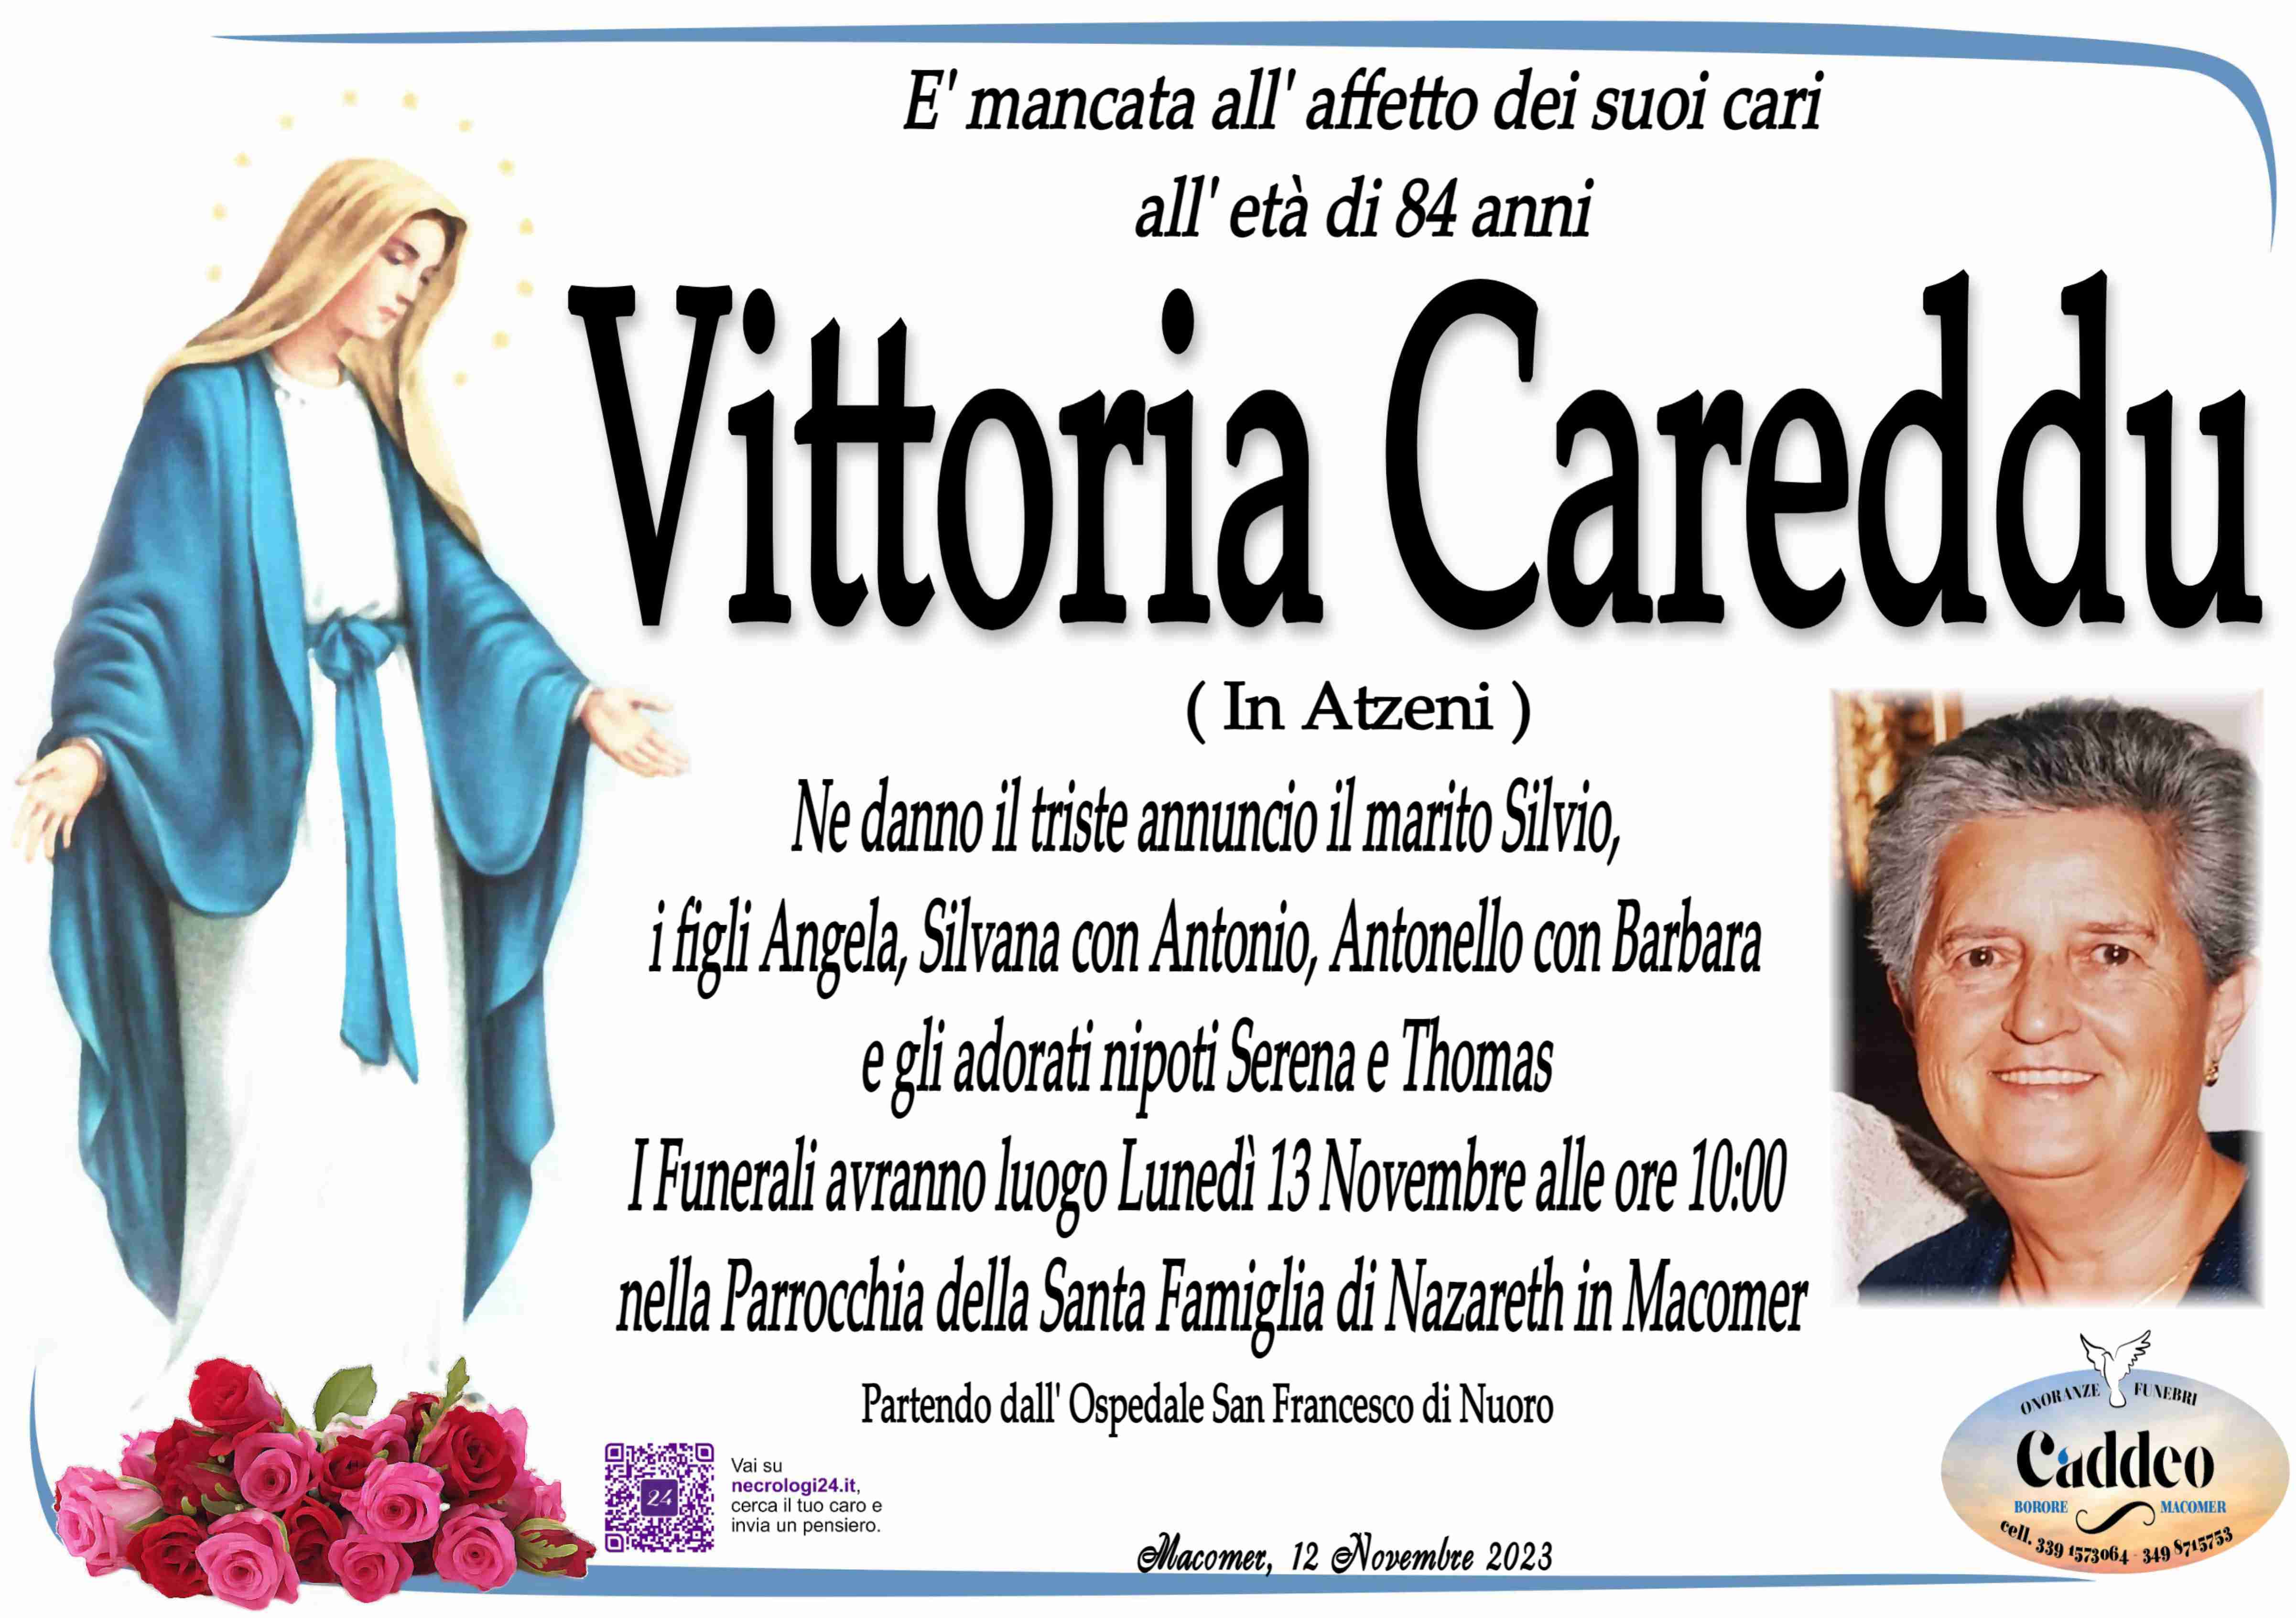 Vittoria Careddu